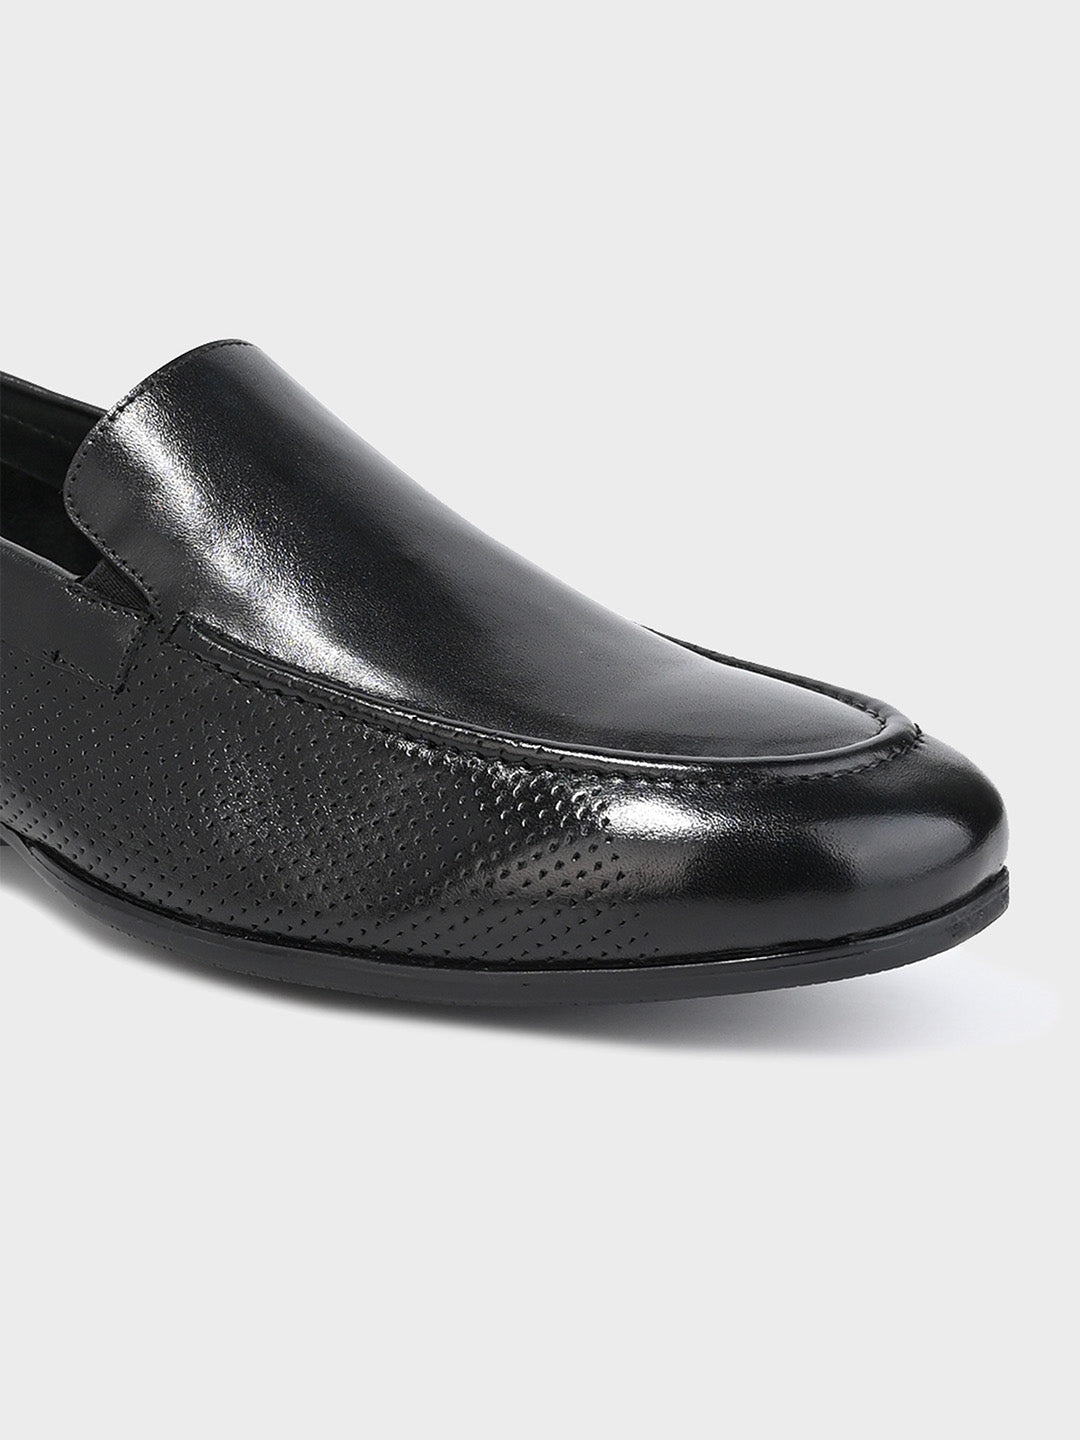 Men's Black Leather Hook & Loop Sandals